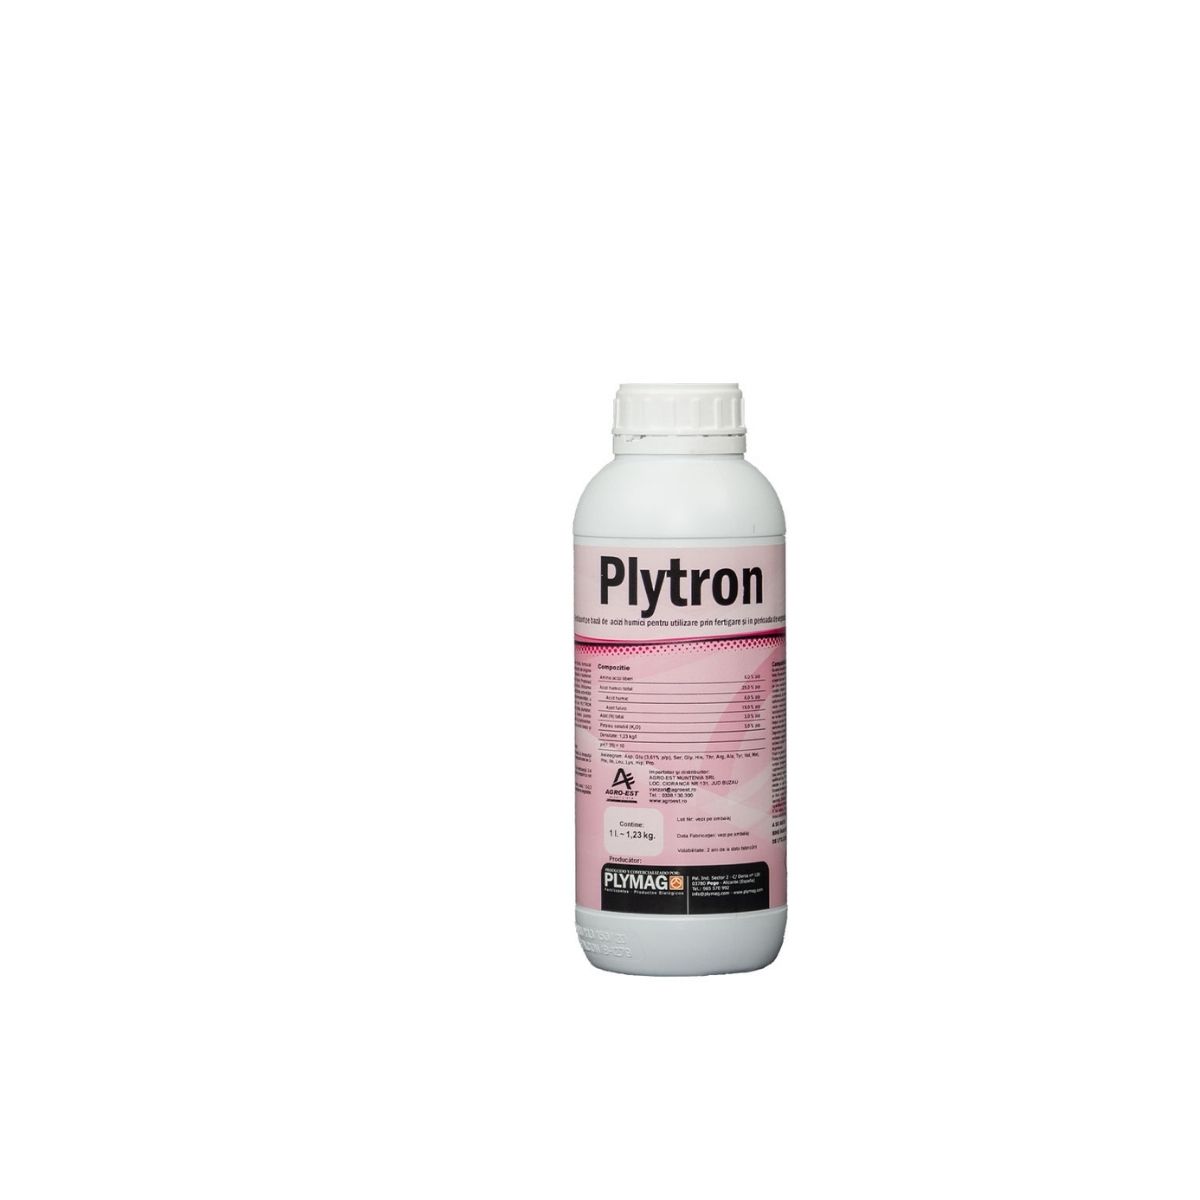 Produse pe baza de acizi humici - Acizi humici cu aminoacizi Plytron, 1 L, hectarul.ro